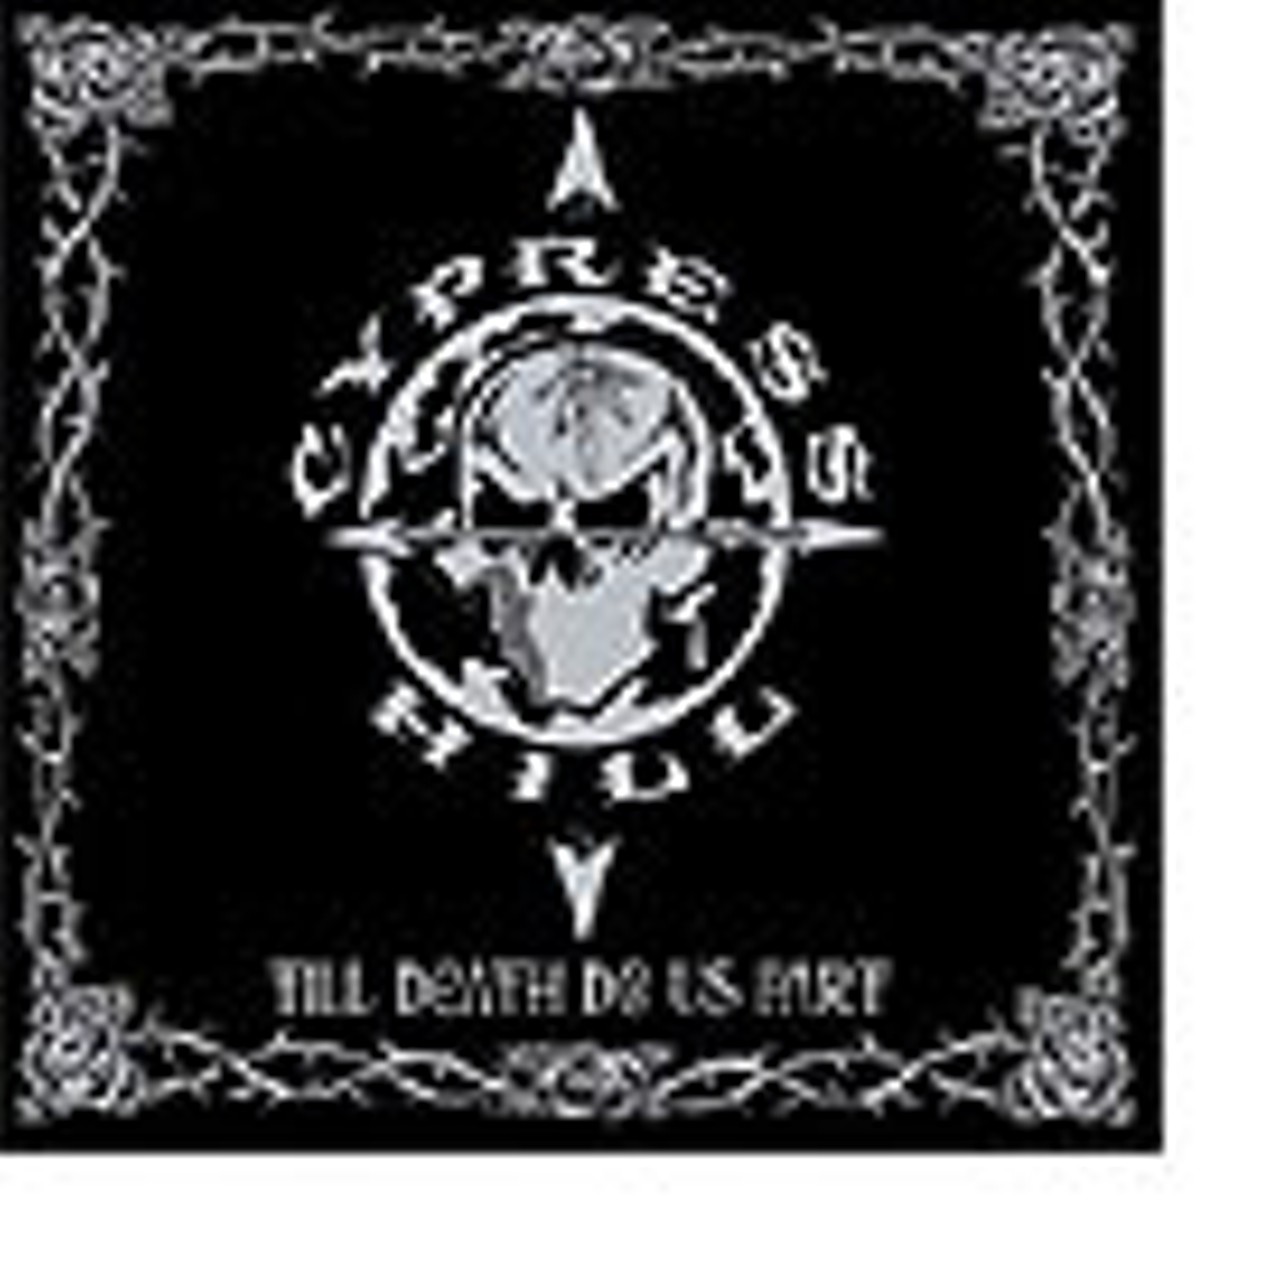 Cypress Hill / TILL DEATH DO US PART